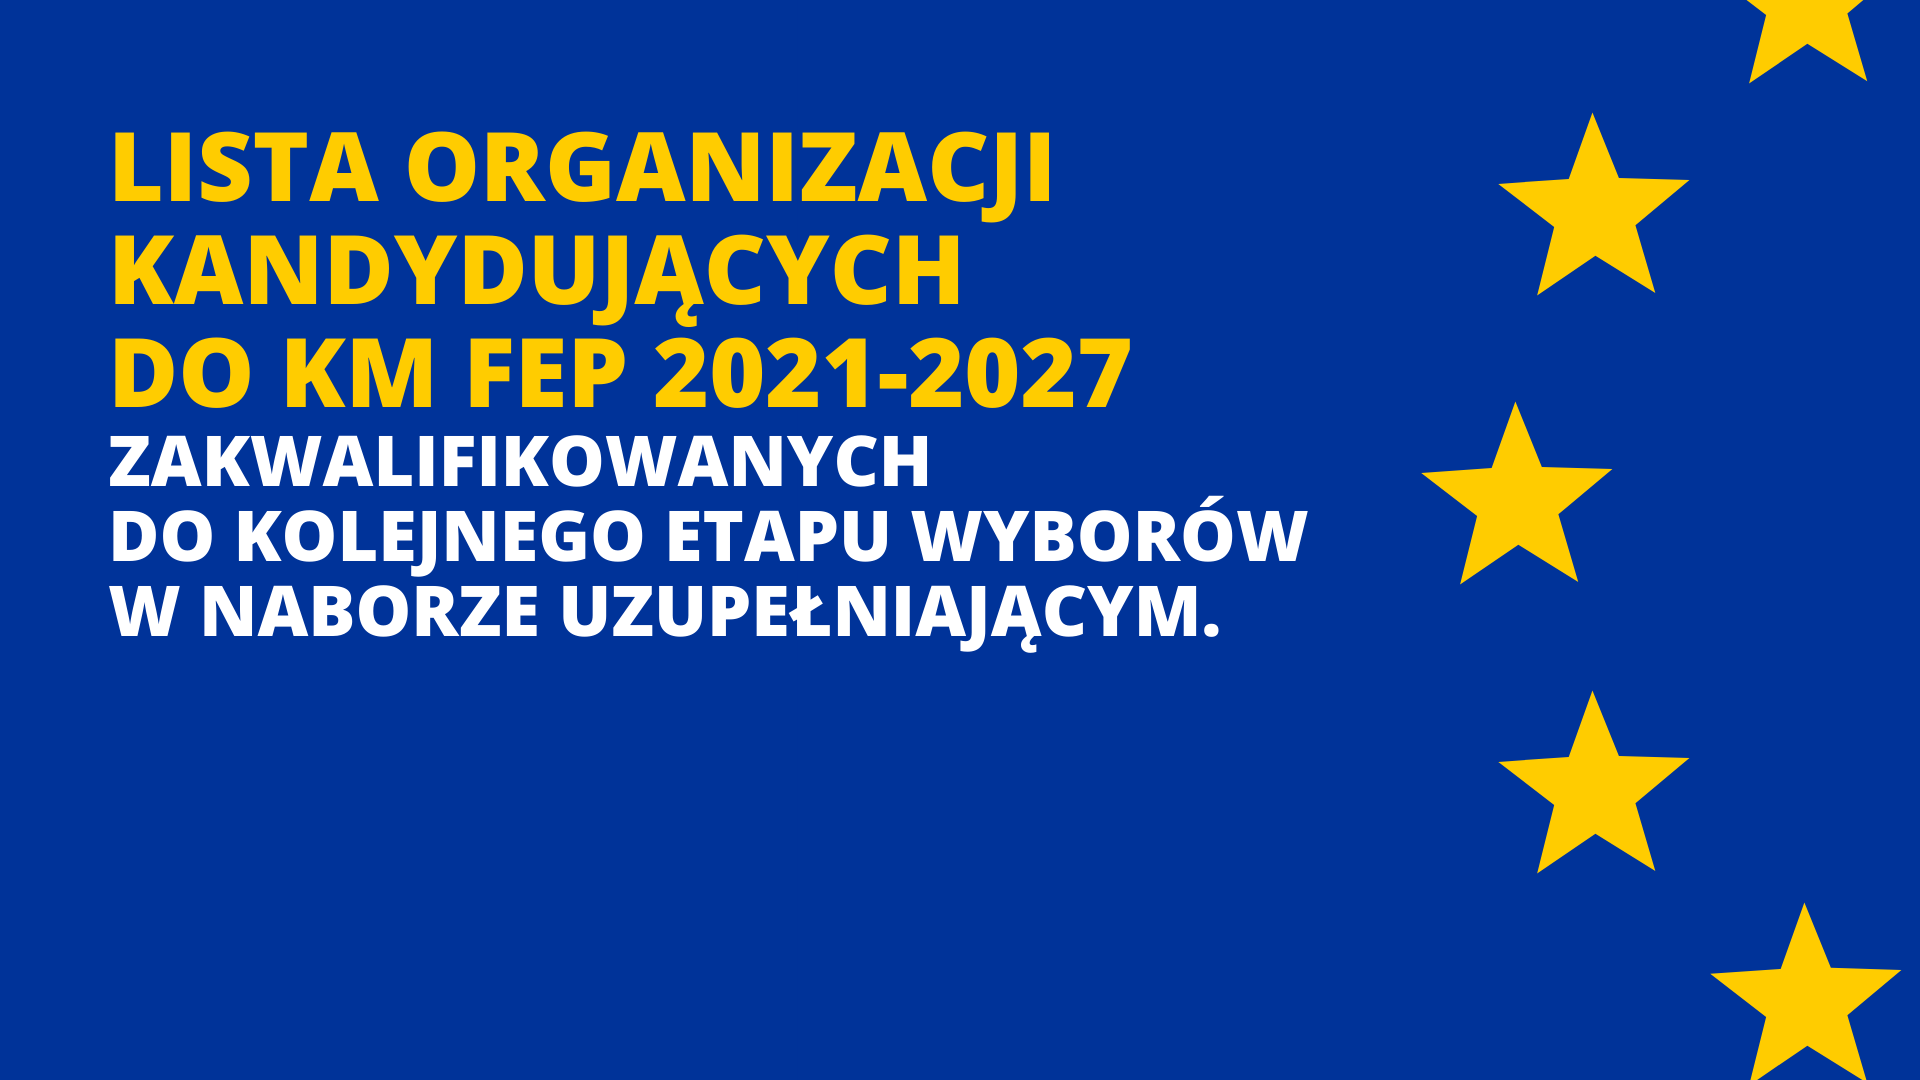 [aktualizacja14.12.22] Lista organizacji kandydujących do KM FEP 2021-2027 zakwalifikowanych do kolejnego etapu wyborów w naborze uzupełniającym.